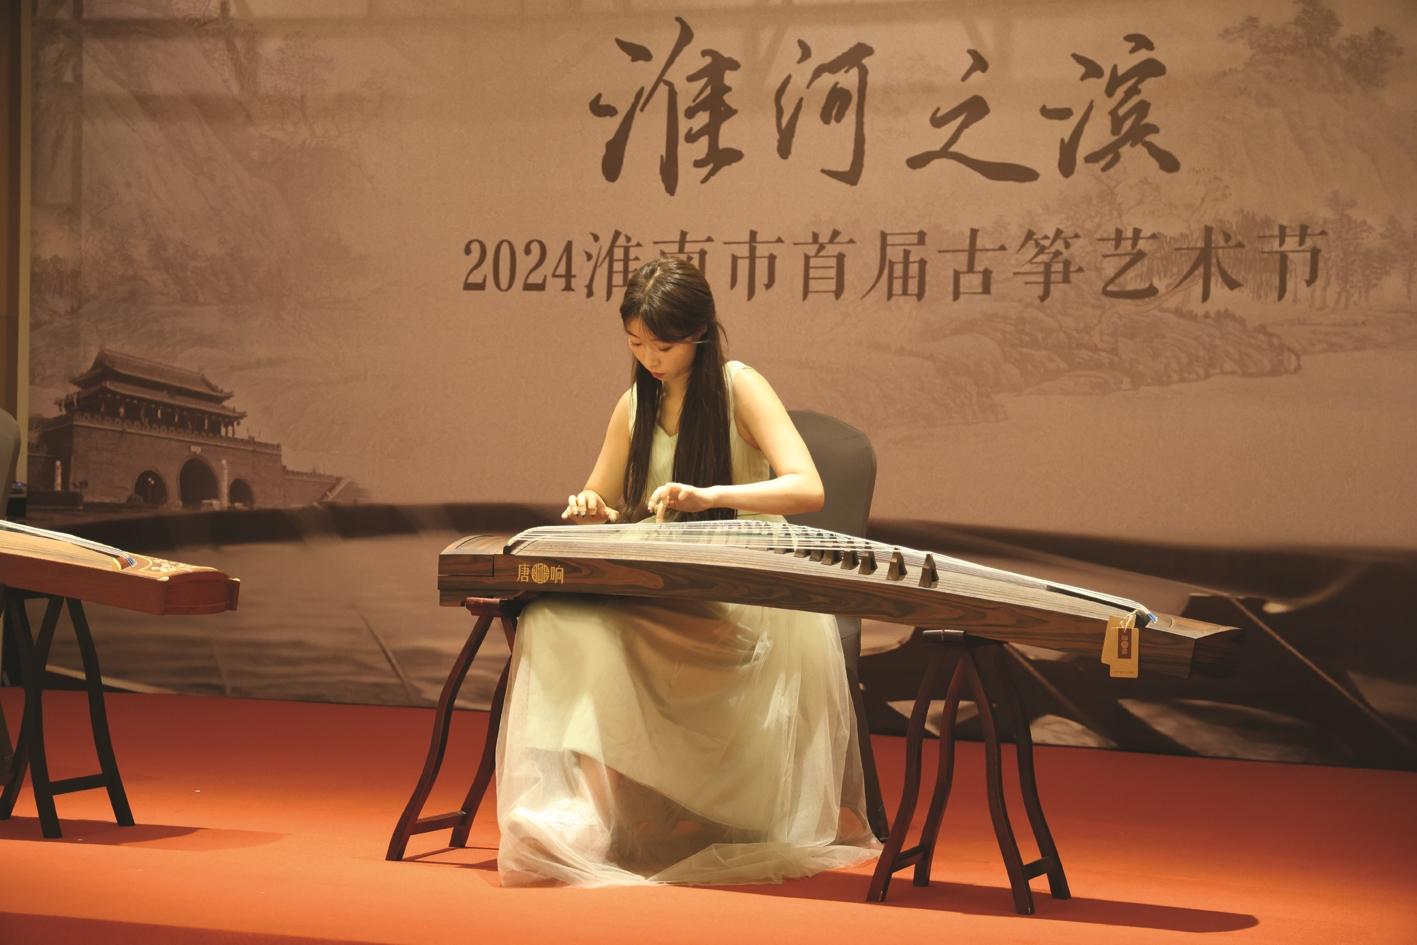 2024 Huainan City's first Guzheng Art Festival grand opening